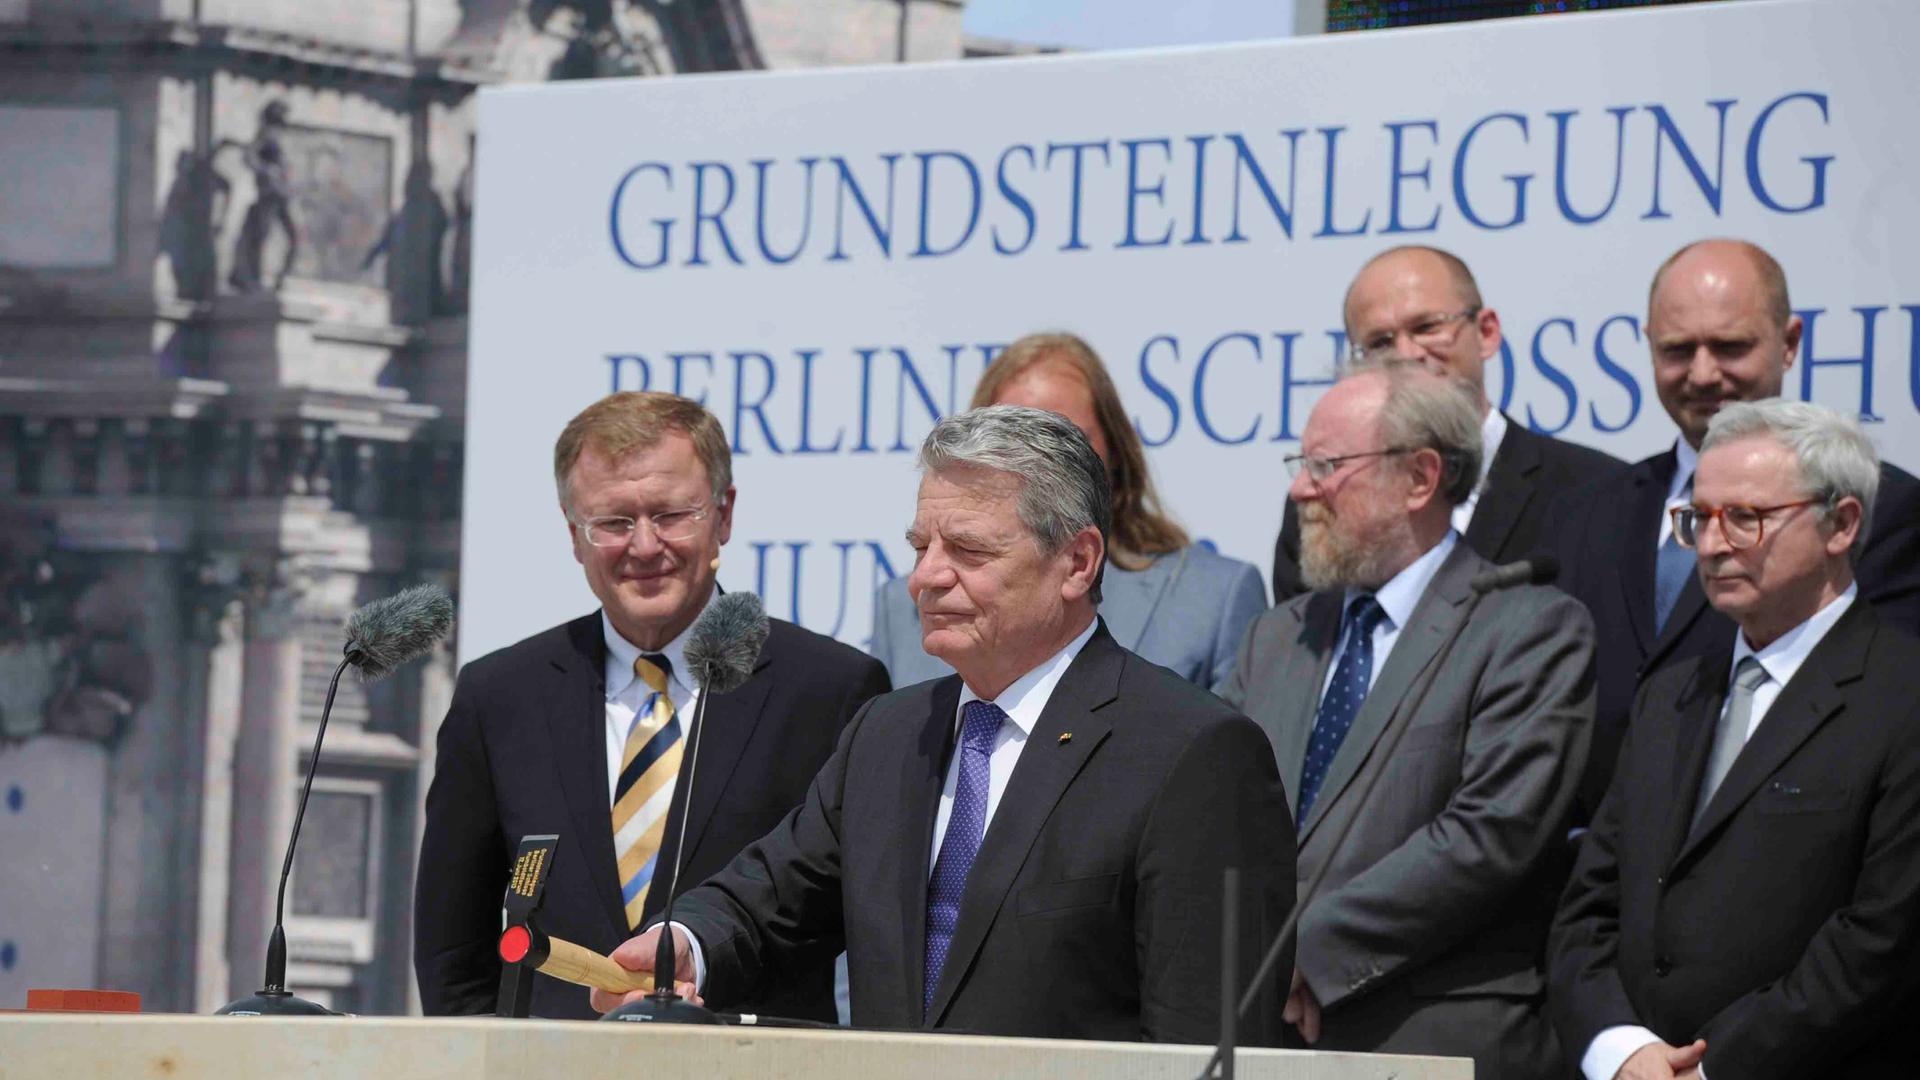 Der damalige Bundespräsident Joachim Gauck und Bundestagspräsident Wolfgang Thierse (zweiter von rechts) legen den Grundstein für das Berliner Schloss - Humboldtforum 12. Juni 2013 auf dem  Schlossplatz Berlin